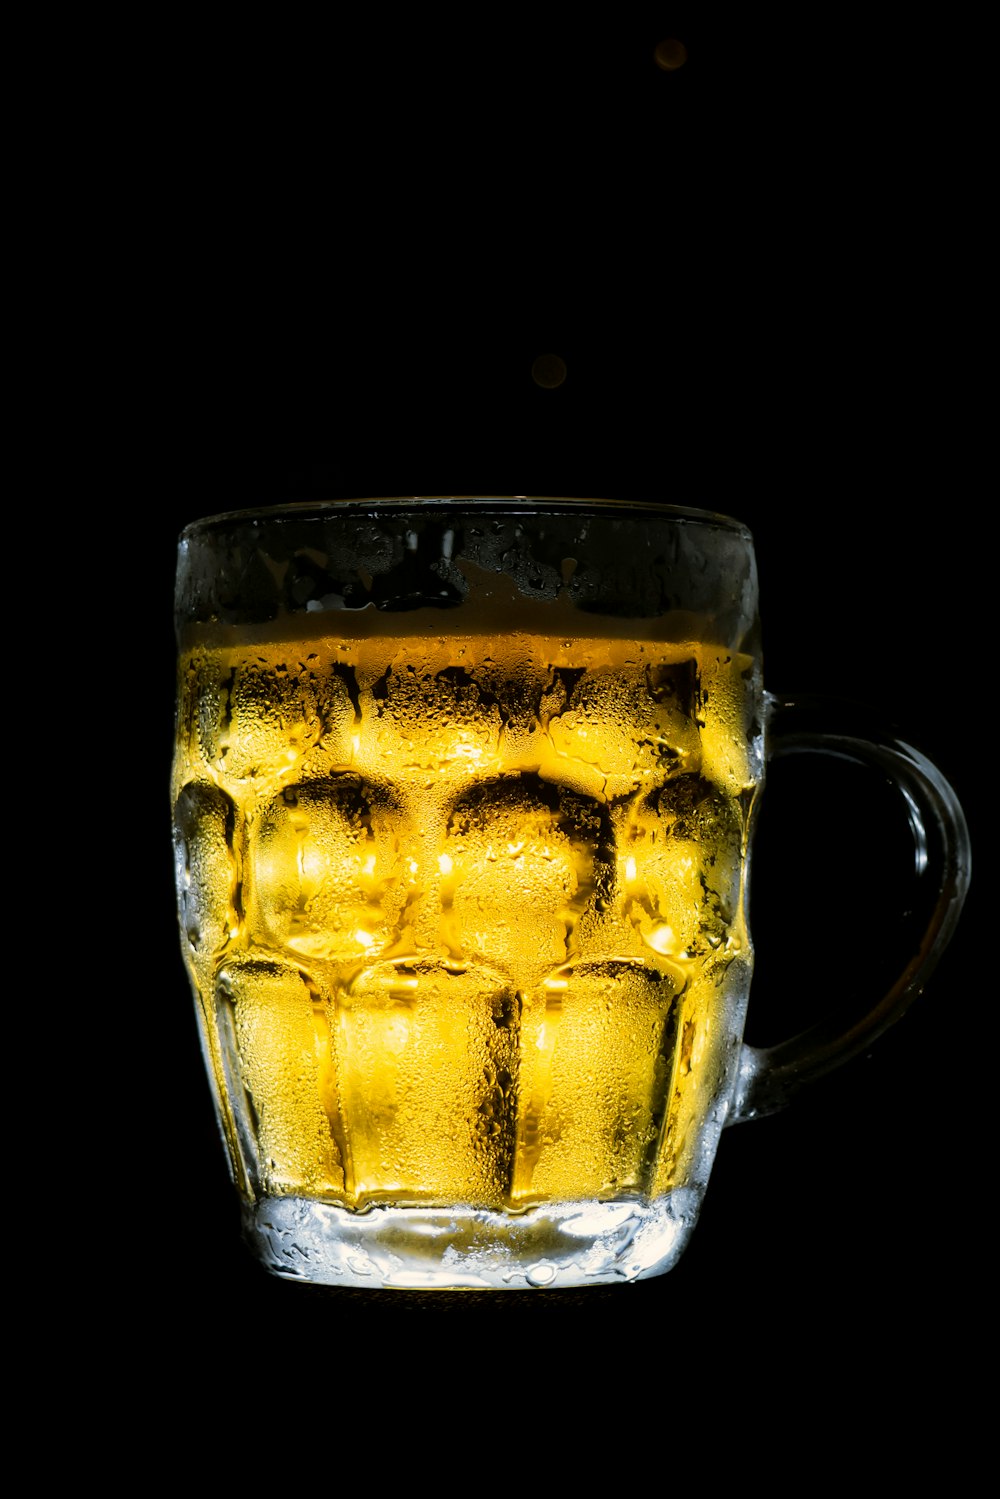 boccale in vetro trasparente con birra